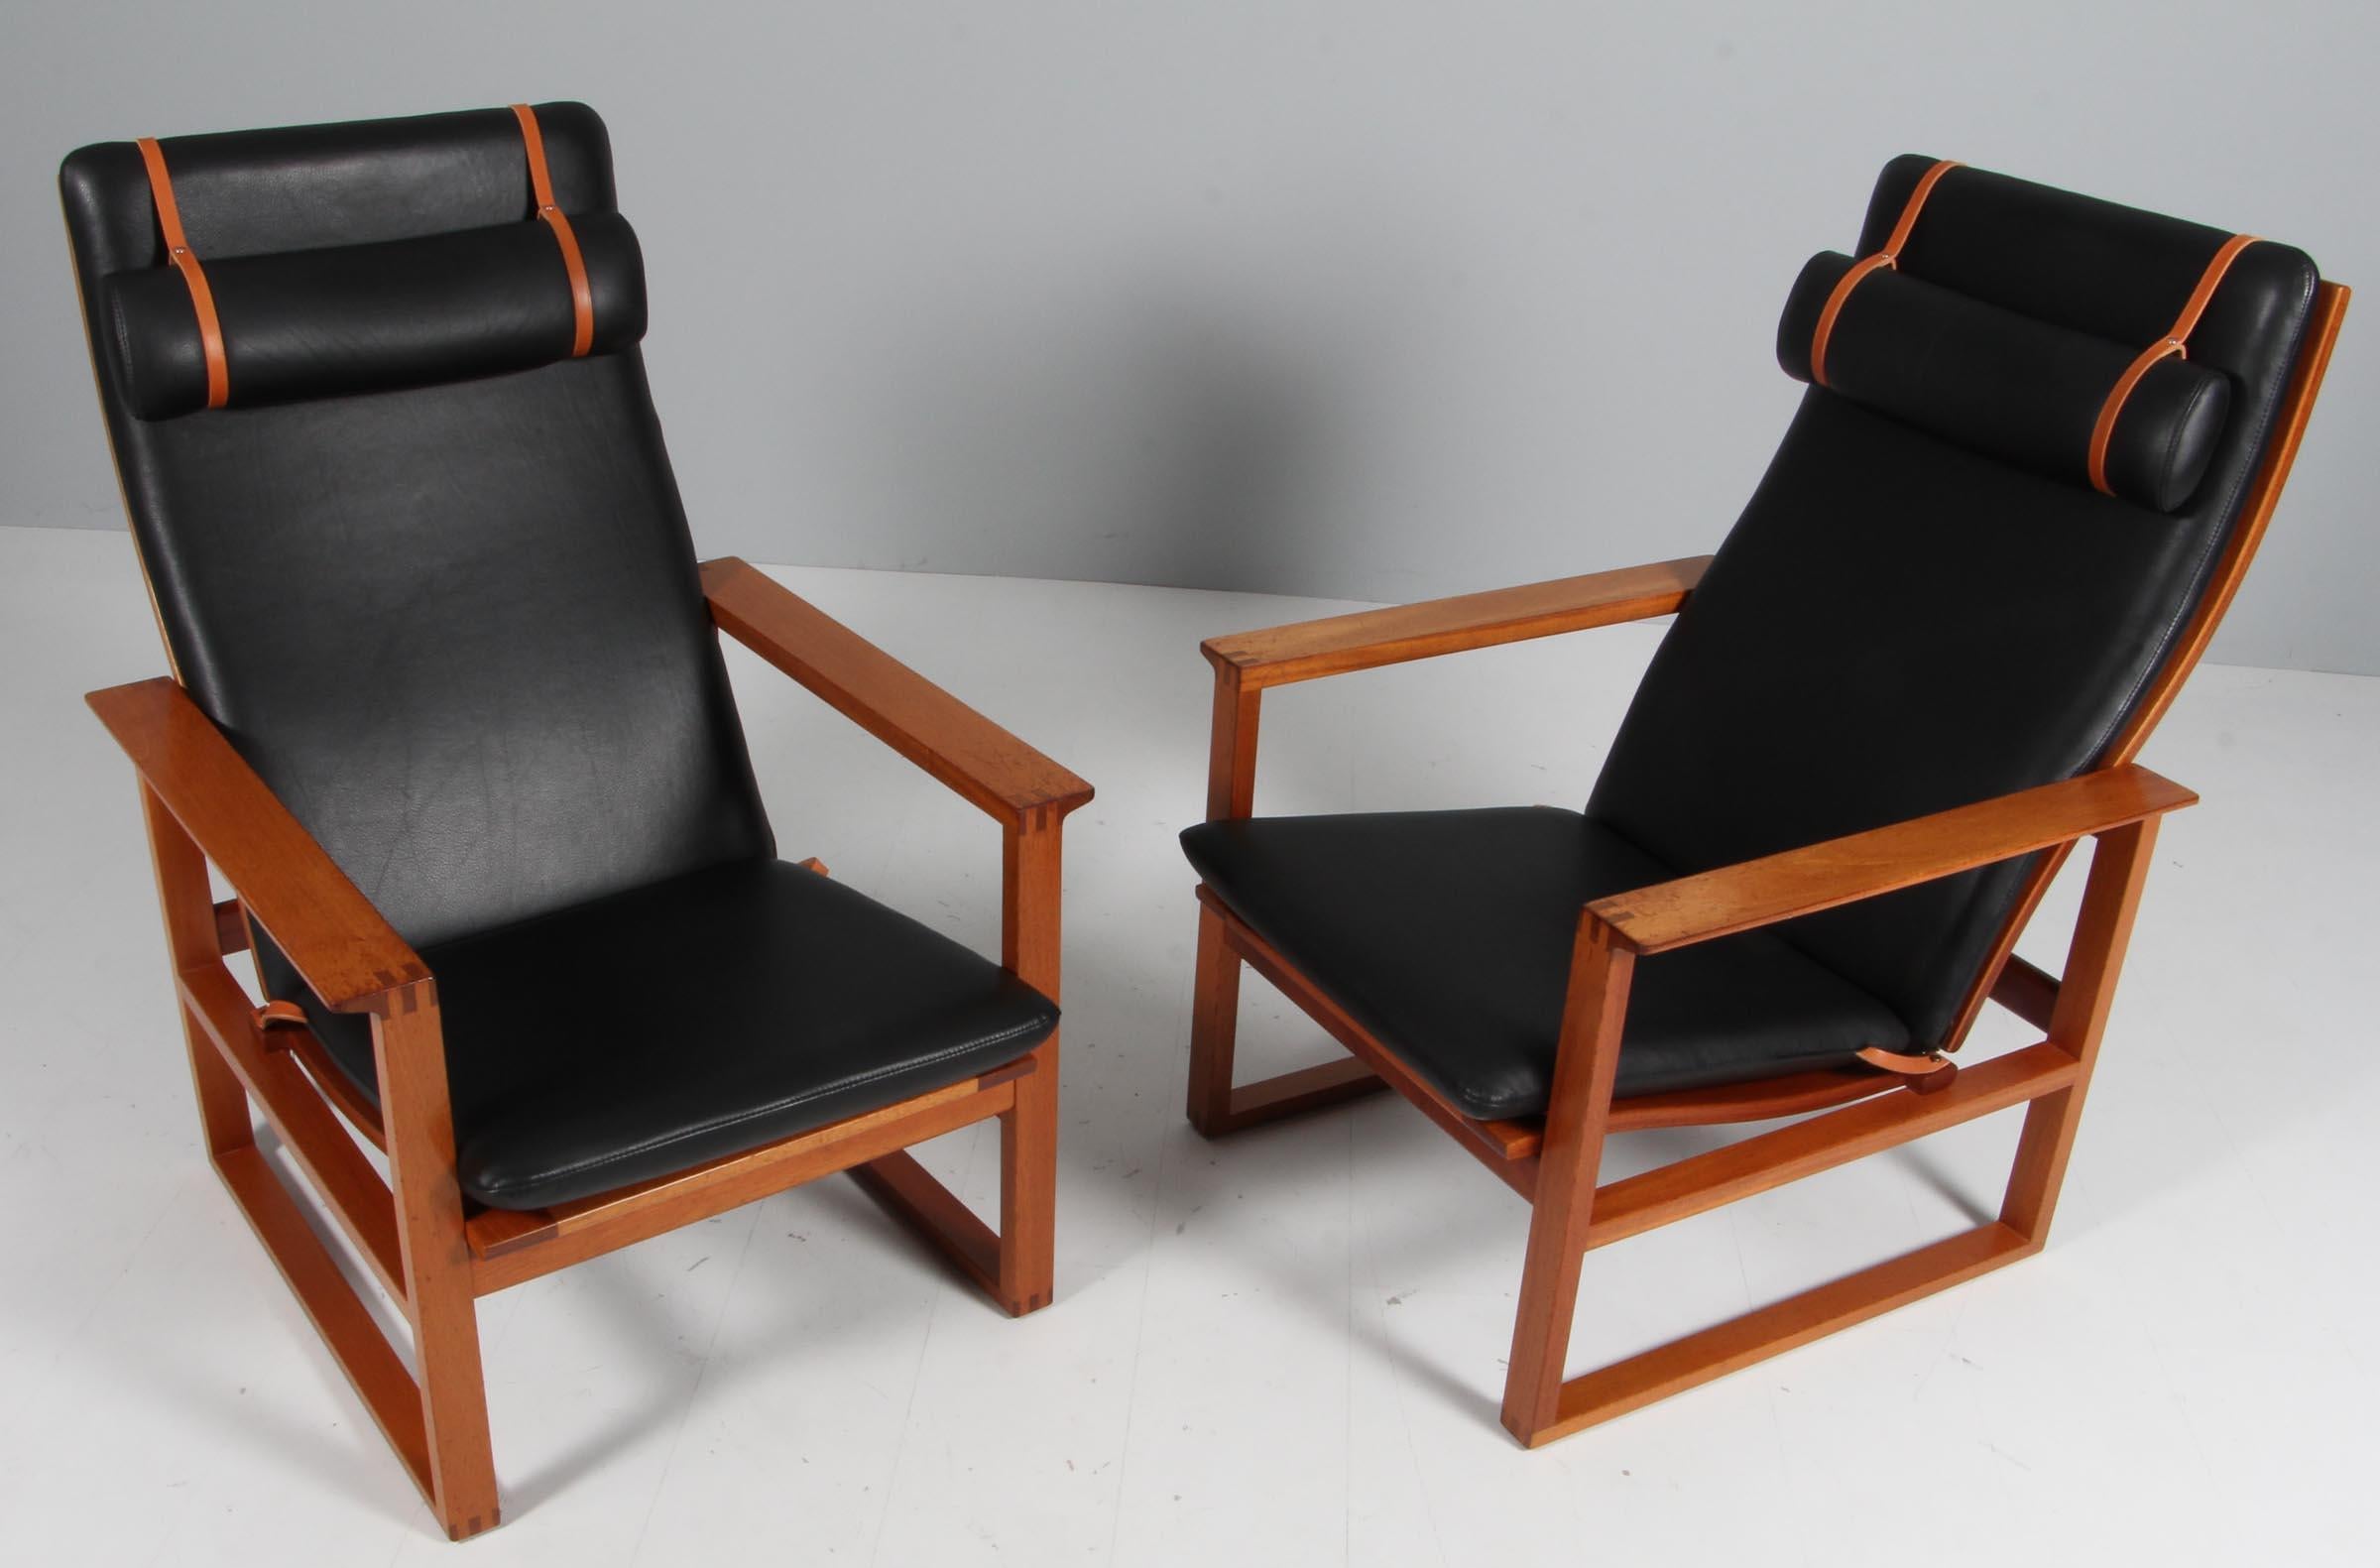 Chaise longue de Børge Mogensen conçue en 1956, numéro de modèle 2254, pour Fredericia Stolefabrik. Cadres cubiques en acajou massif, avec jointures digitales et cannage. 

Rembourré en cuir noir. Le coussin du siège peut être fixé à l'aide d'une